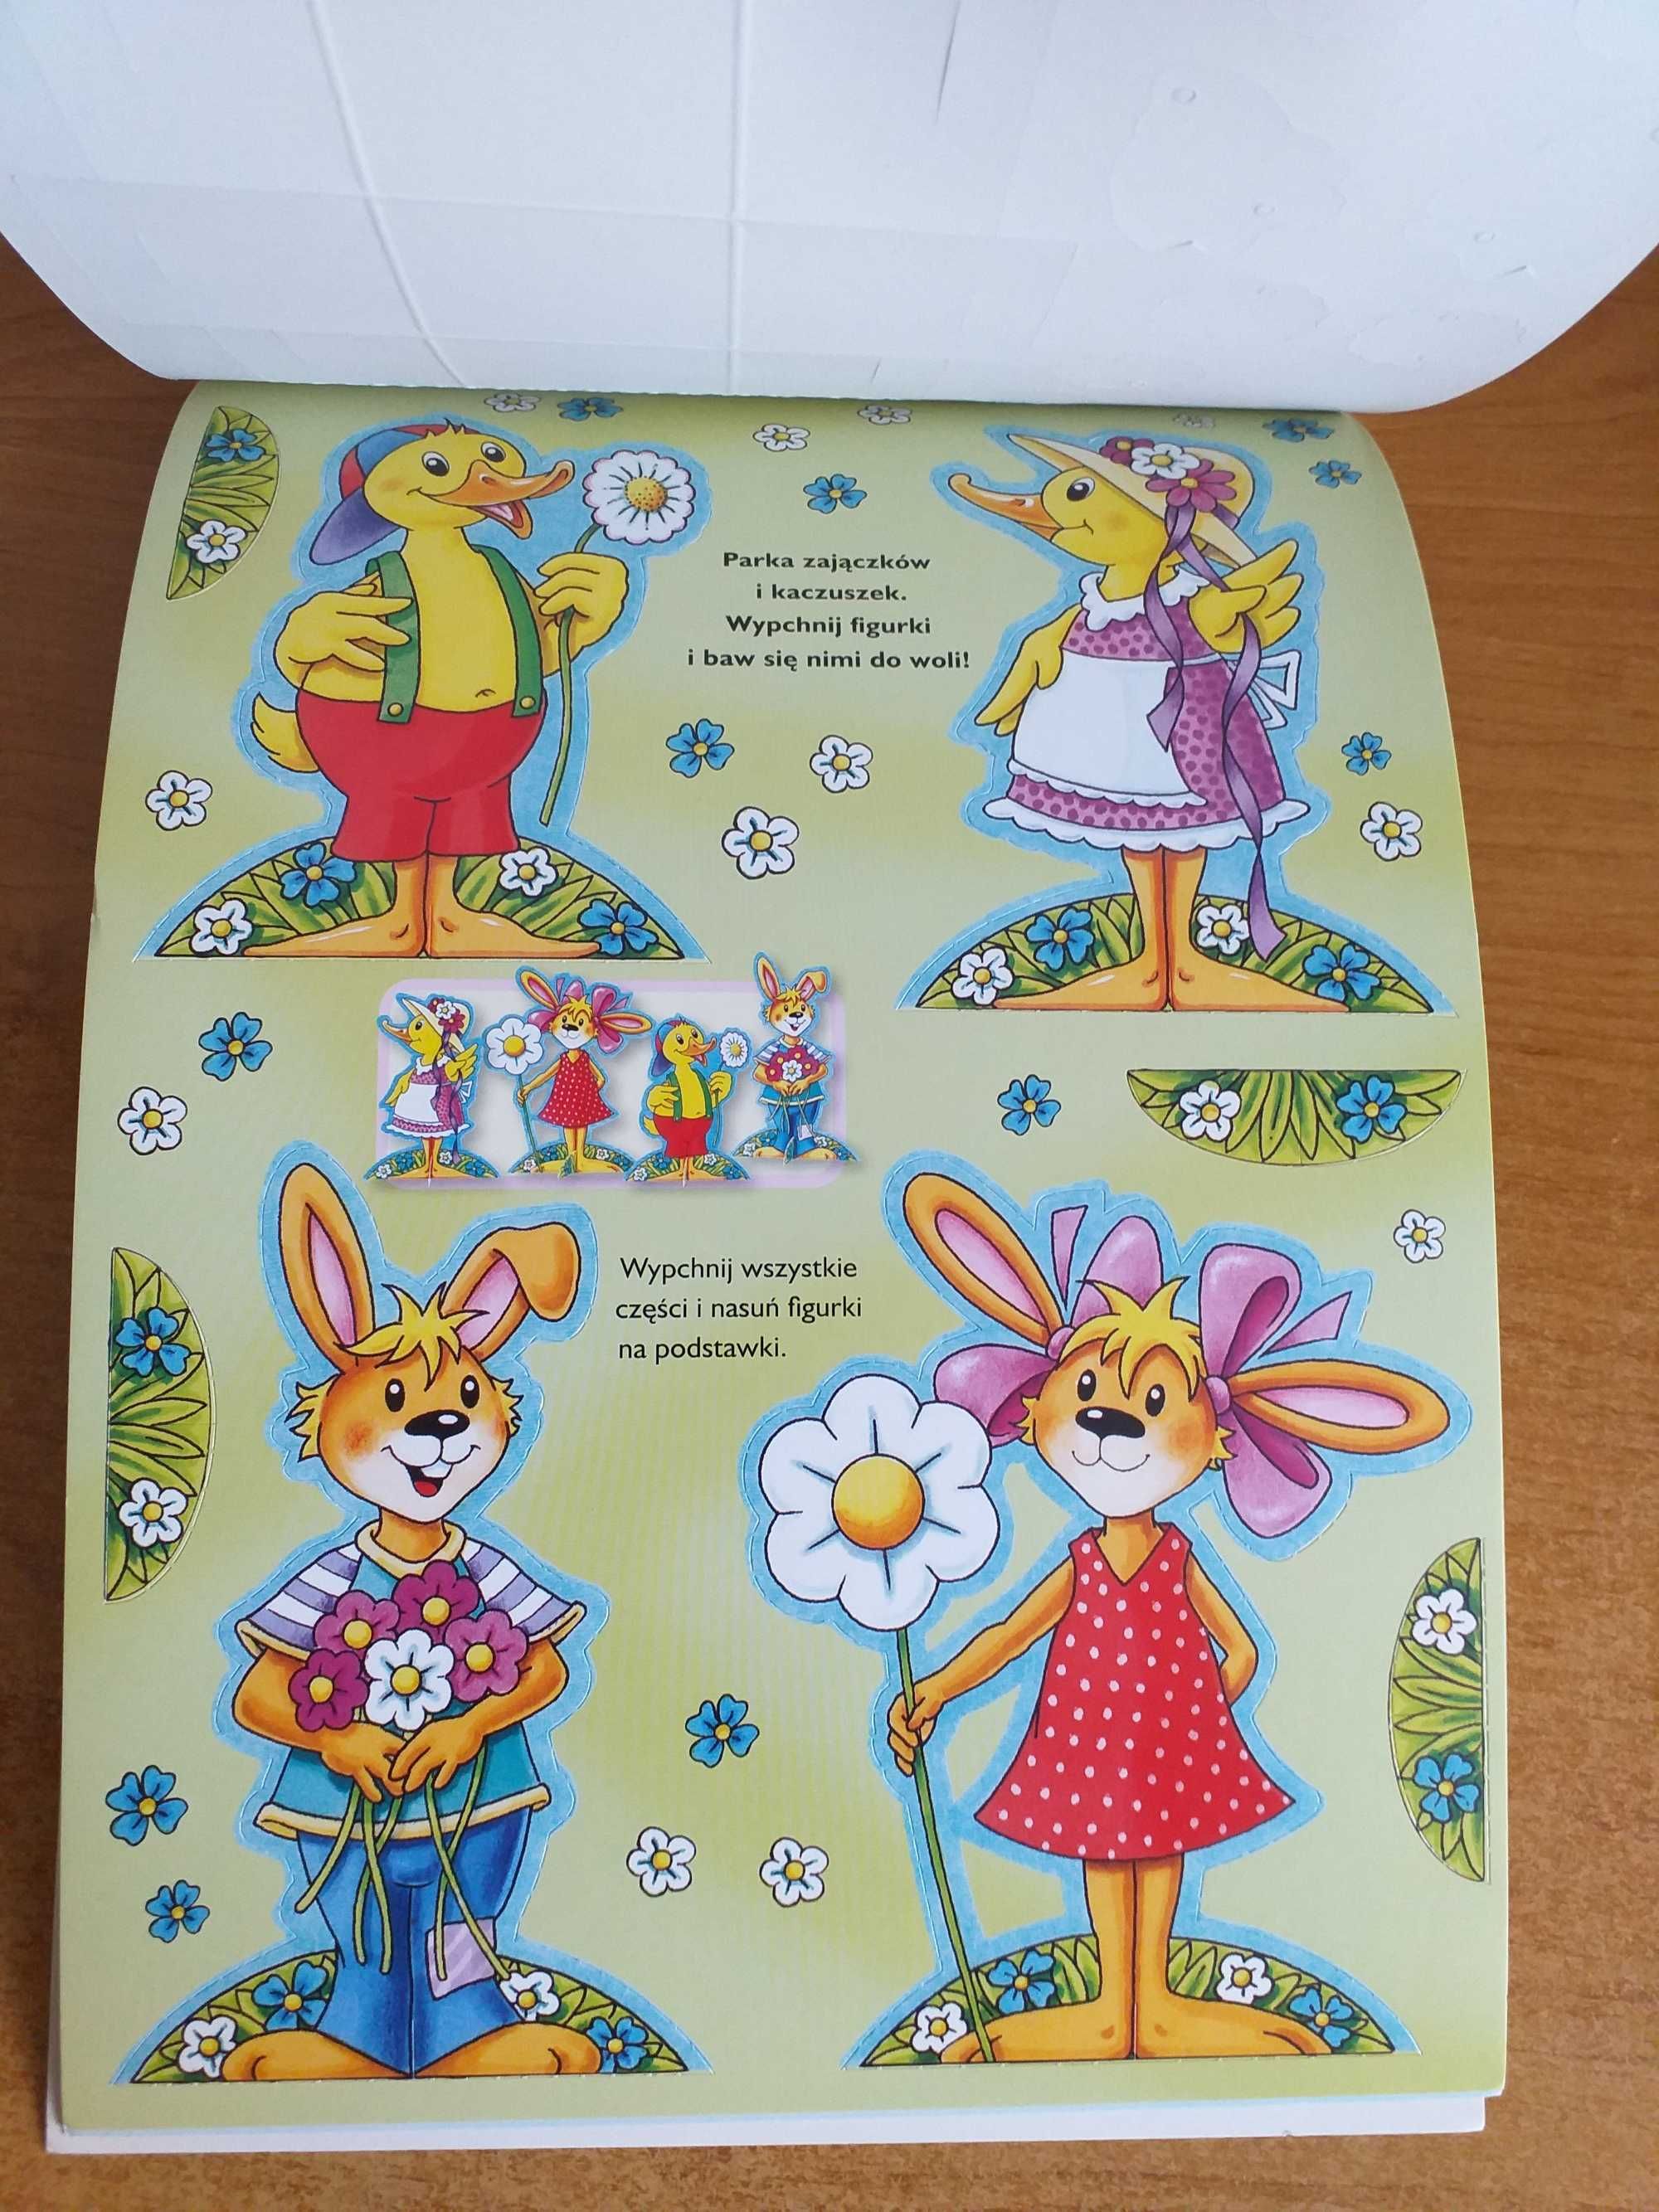 Wielkanocne dekoracje z kartonu - wycinanki dla dzieci